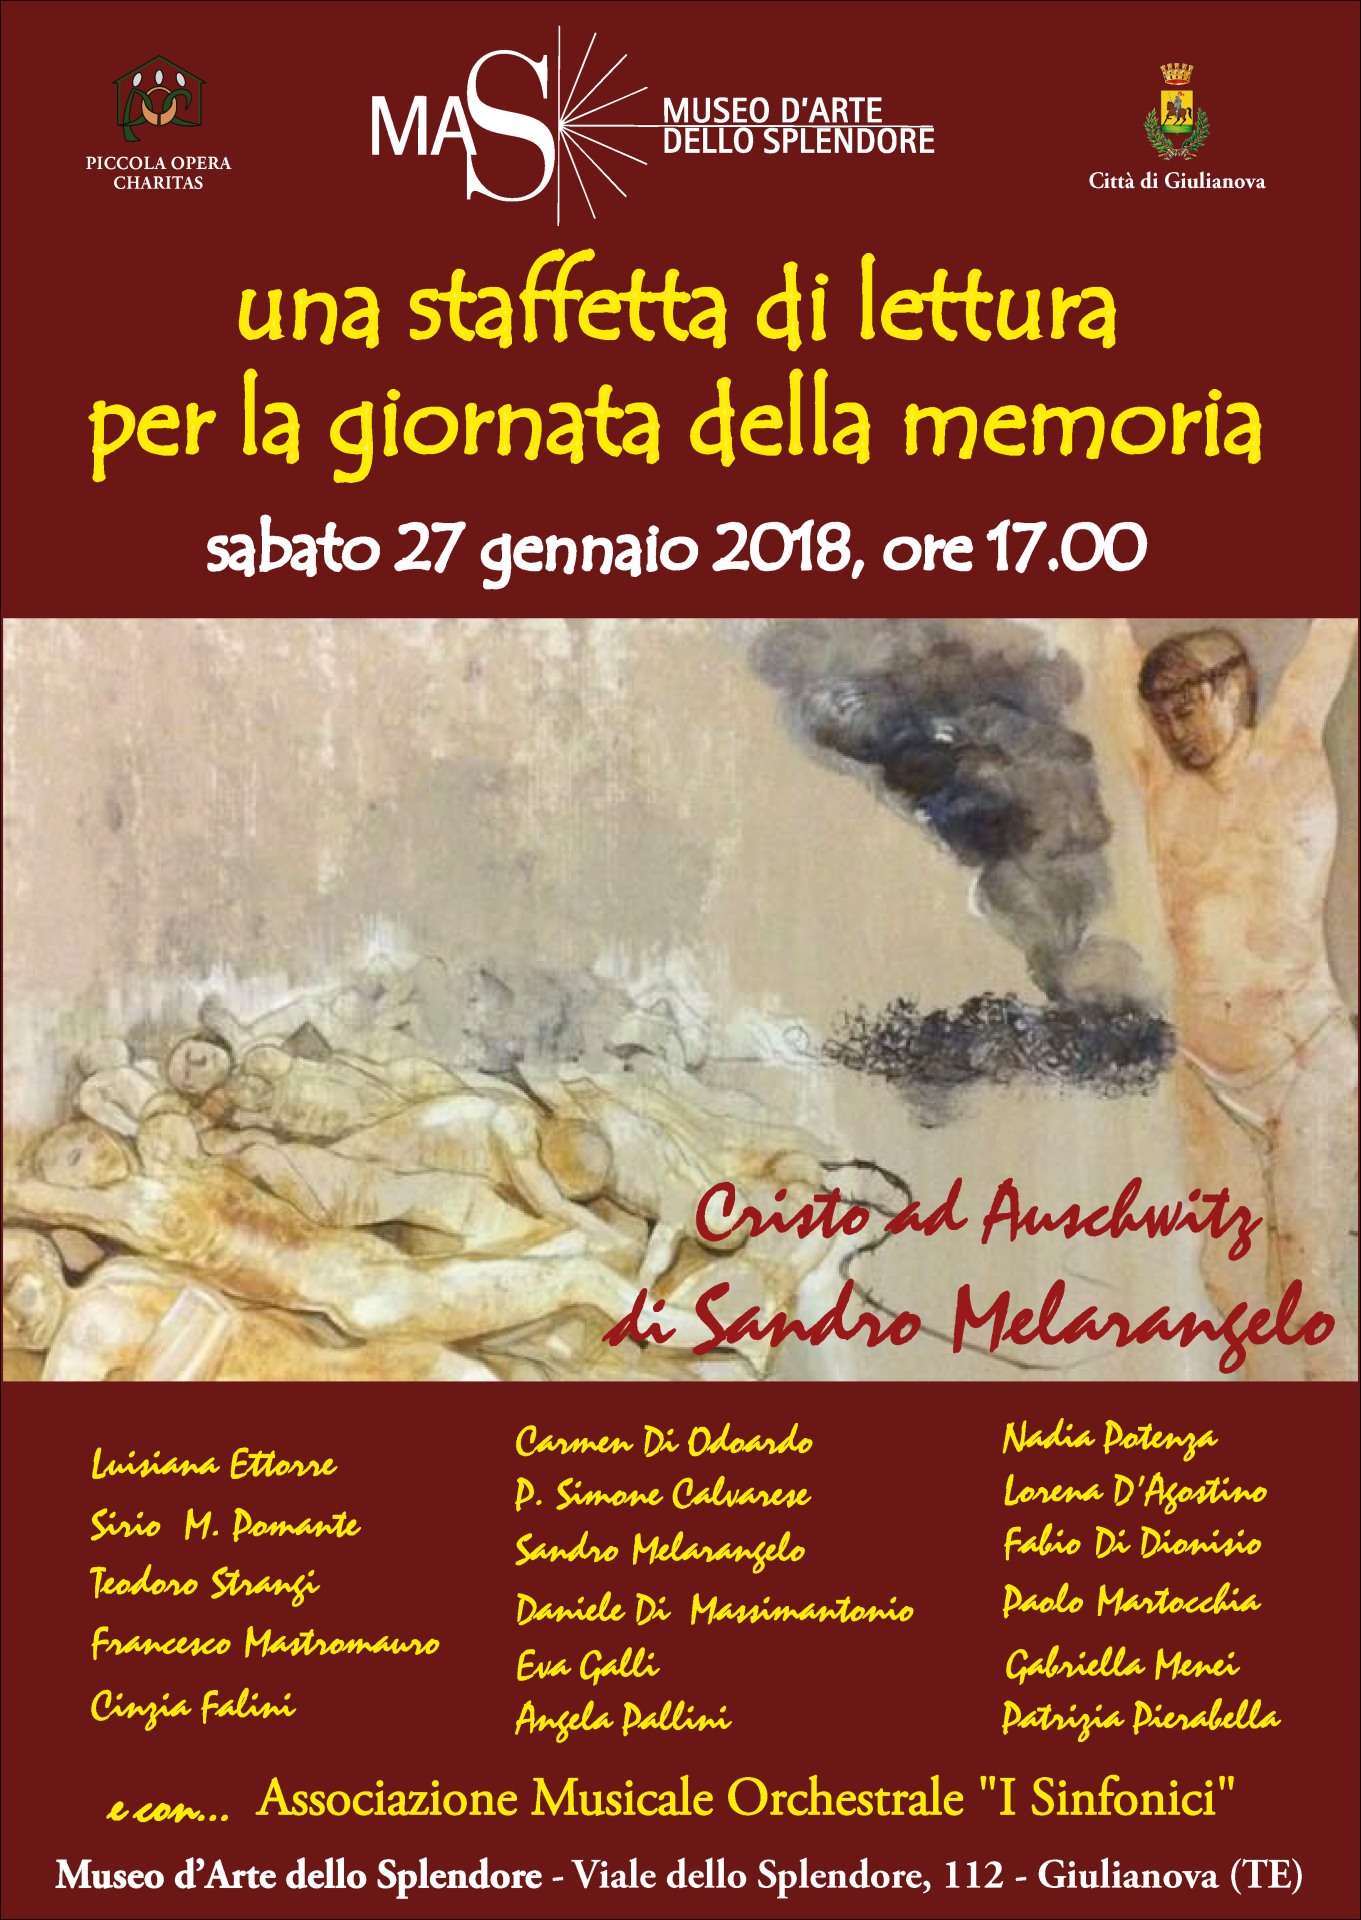 Giulianova&Museo d’Arte dello Splendore: staffetta di lettura per la giornata della memoria